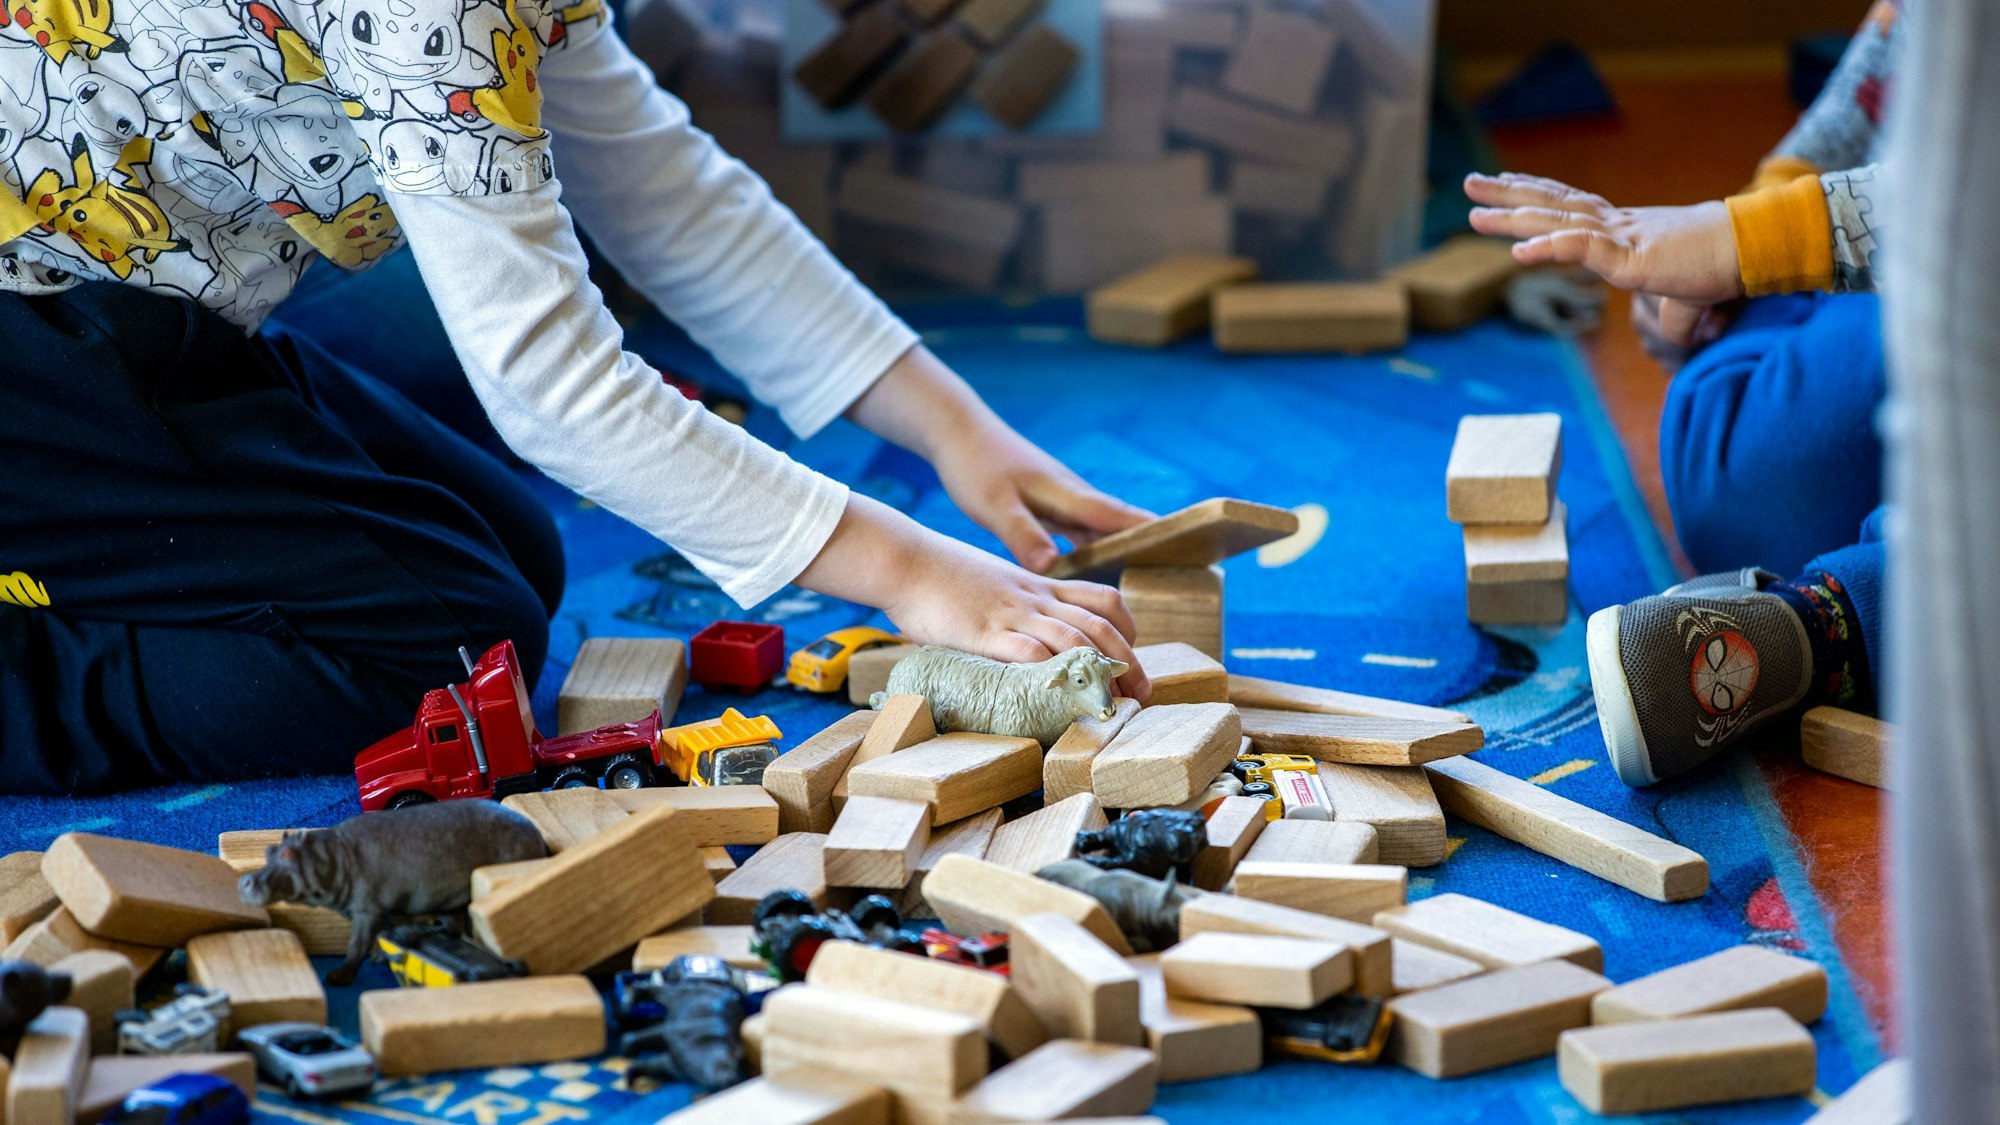 In einer Kindertagesstätte liegen Holzbauklötze, Spielzeugautos und Tierfiguren auf dem Fußboden, auf dem zwei Kinder spielen.